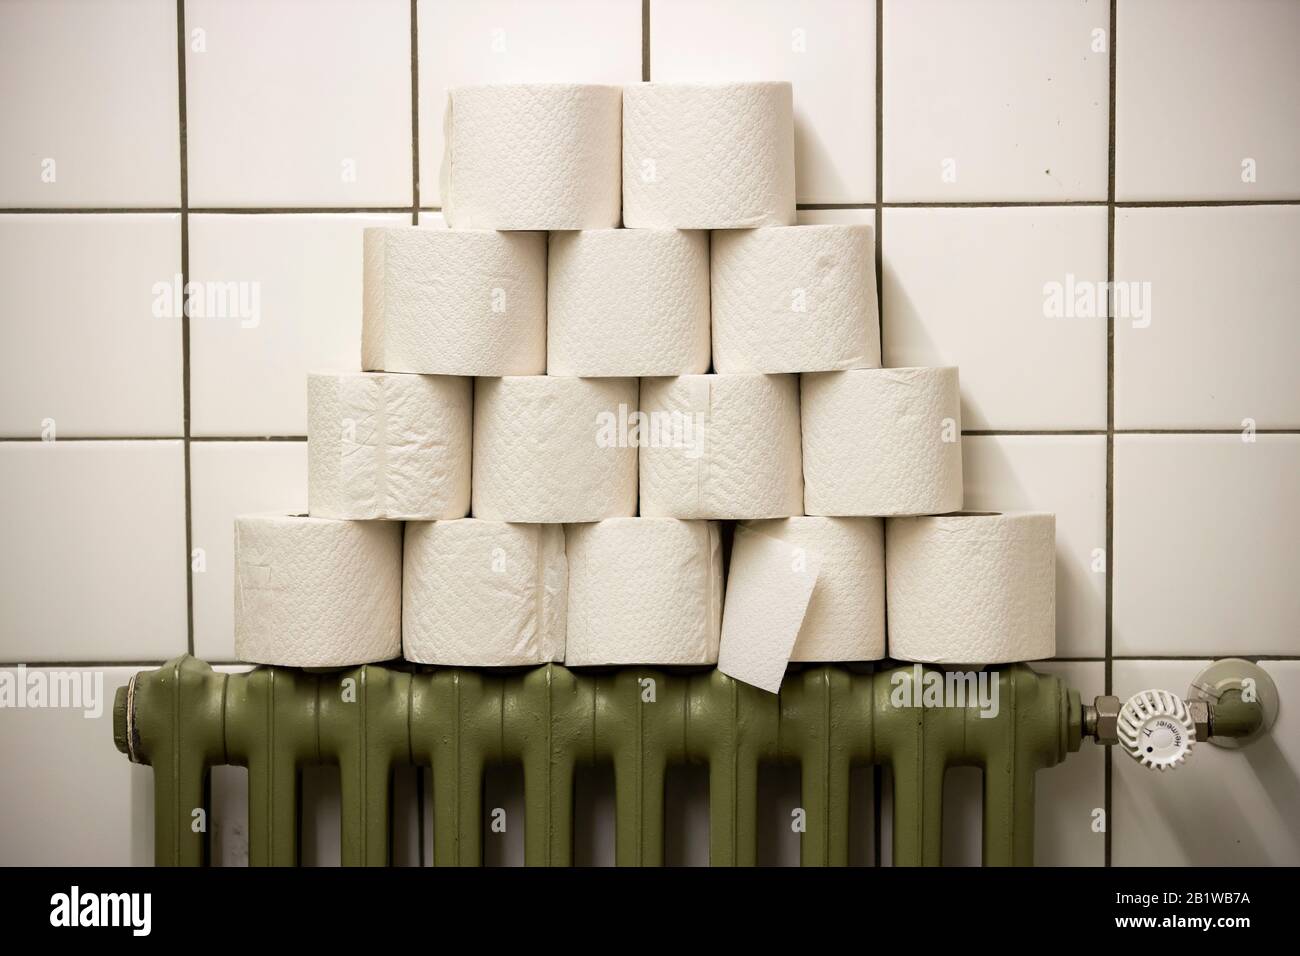 Rotoli di carta igienica impilati su un radiatore, in una toilette pubblica Foto Stock